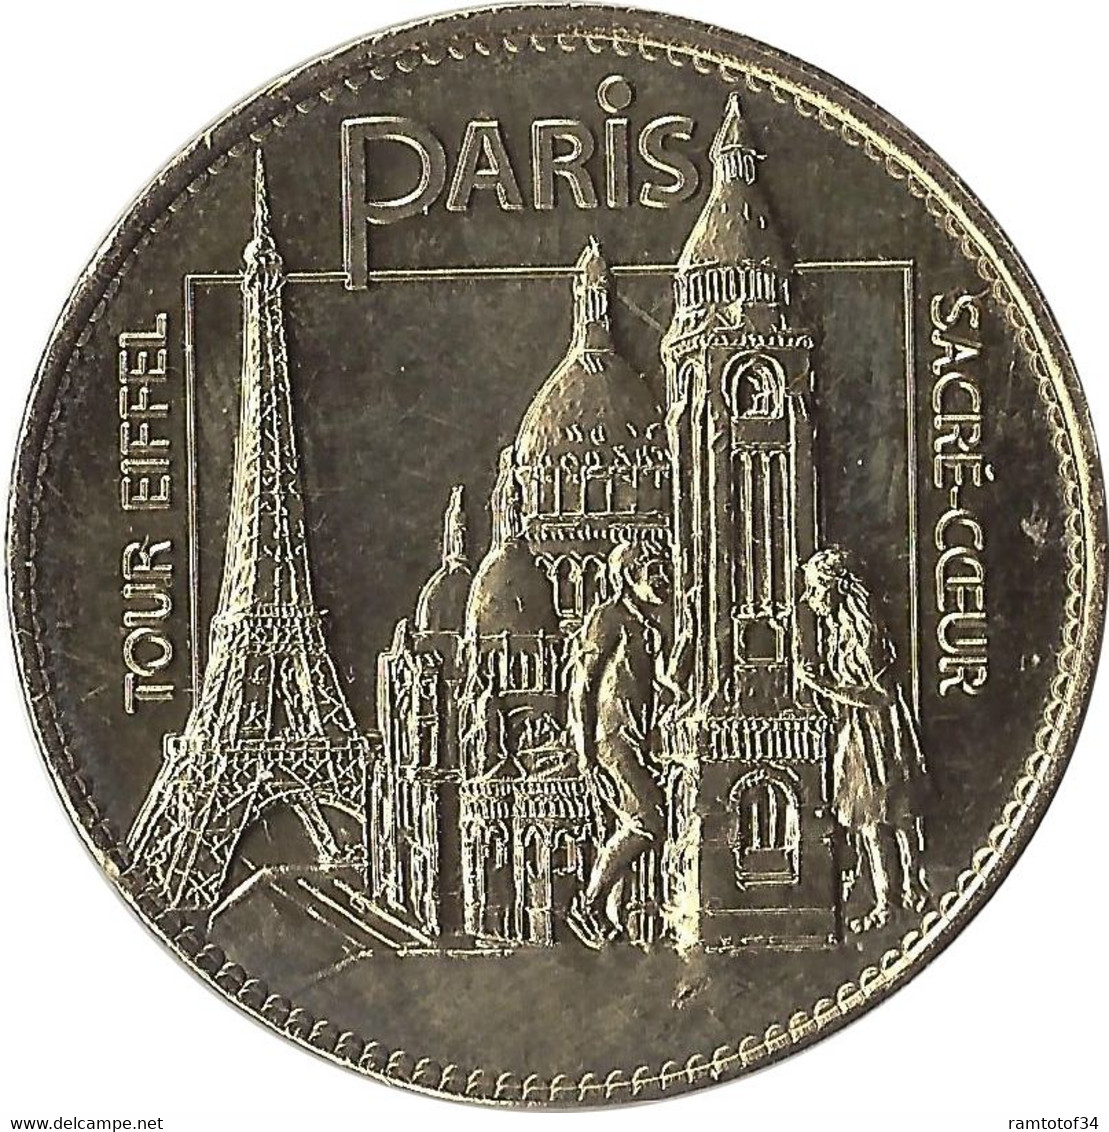 2022 AB101 - ÉLANCOURT - France Miniature 5 (Tour Eiffel Et Sacré Coeur) / PICHARD BALME - 2022